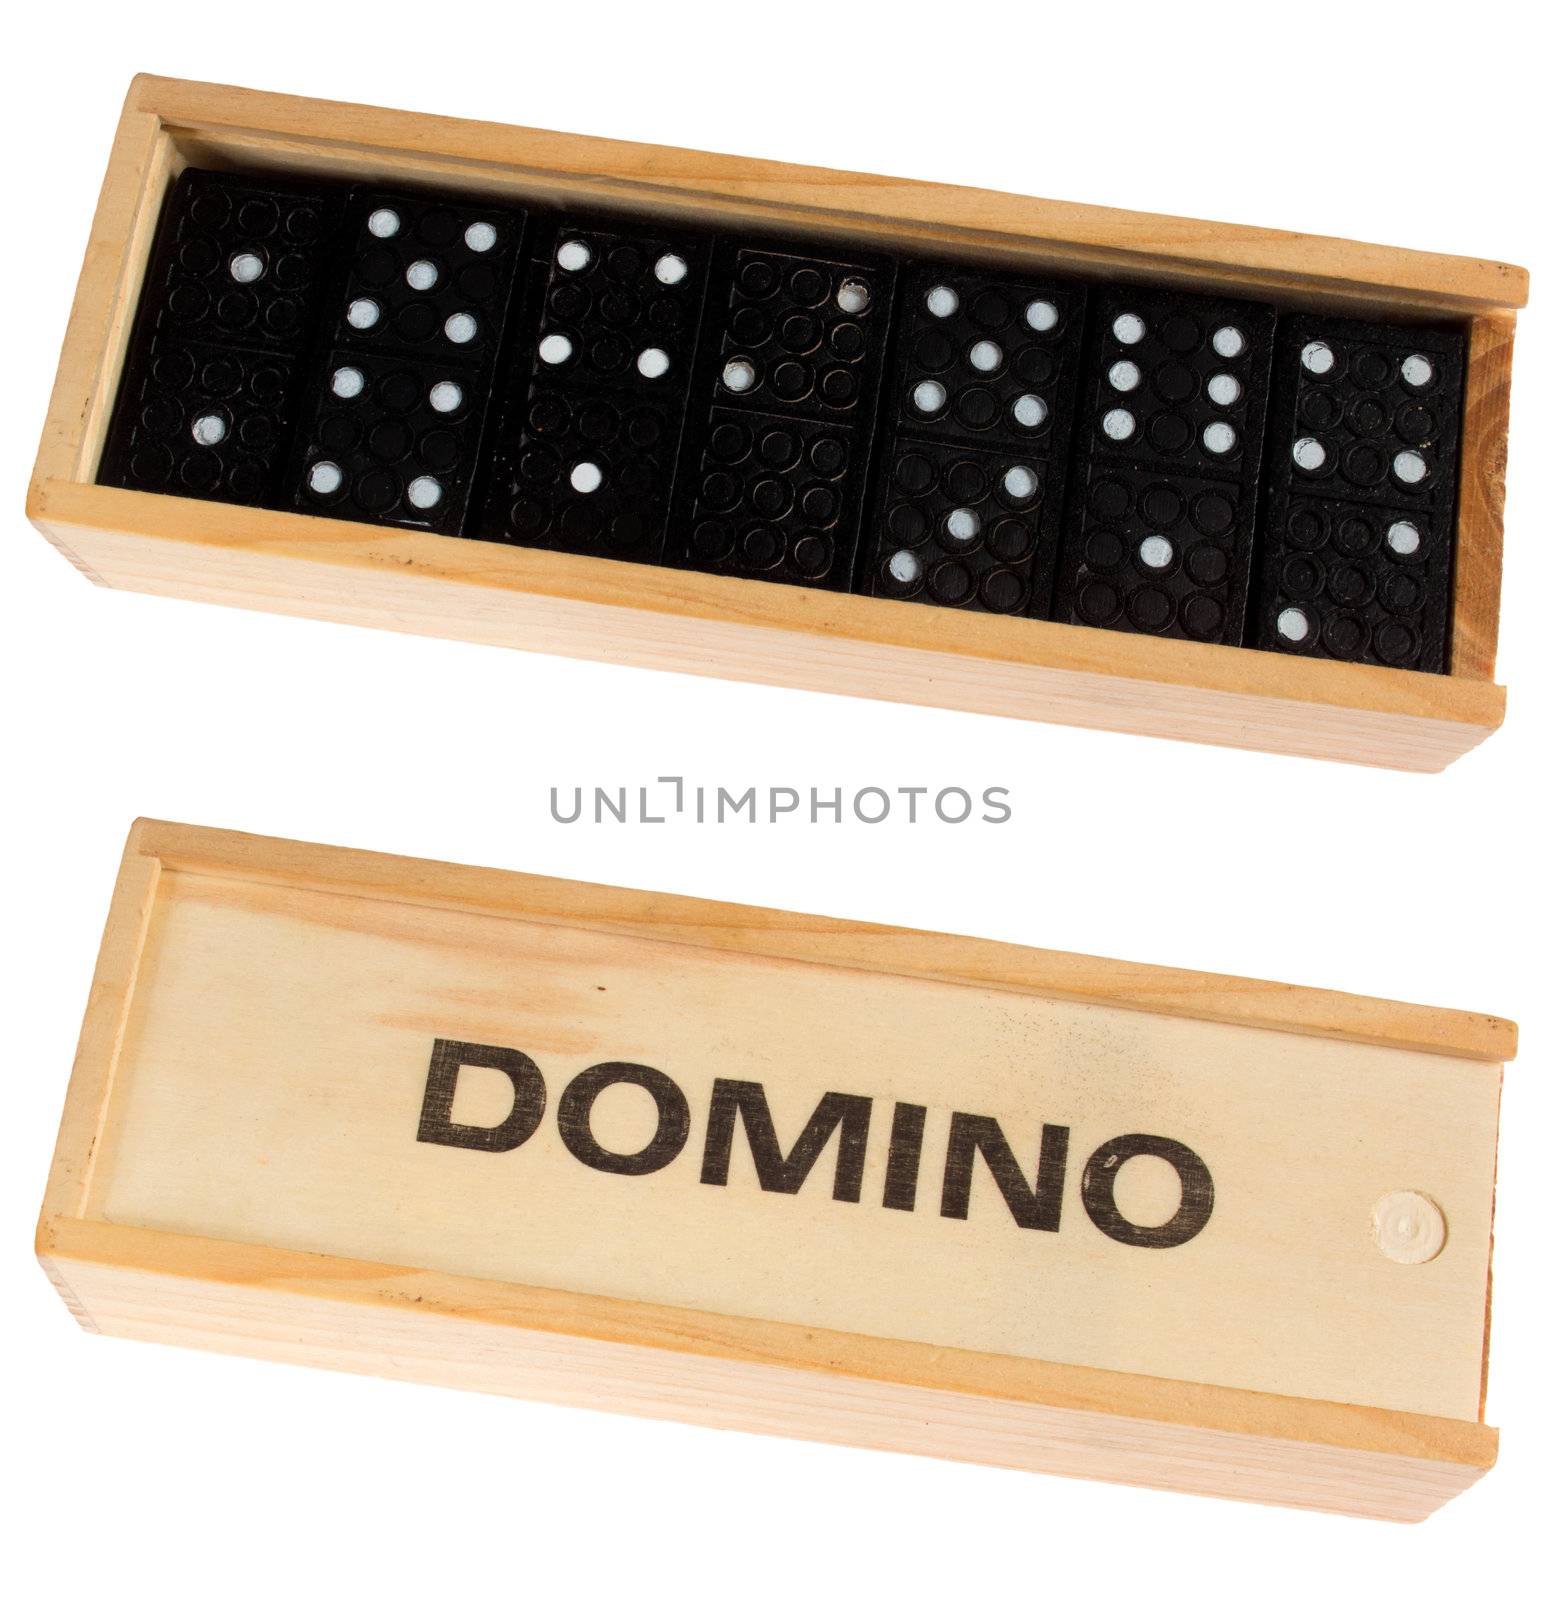 Domino game by tonlammerts